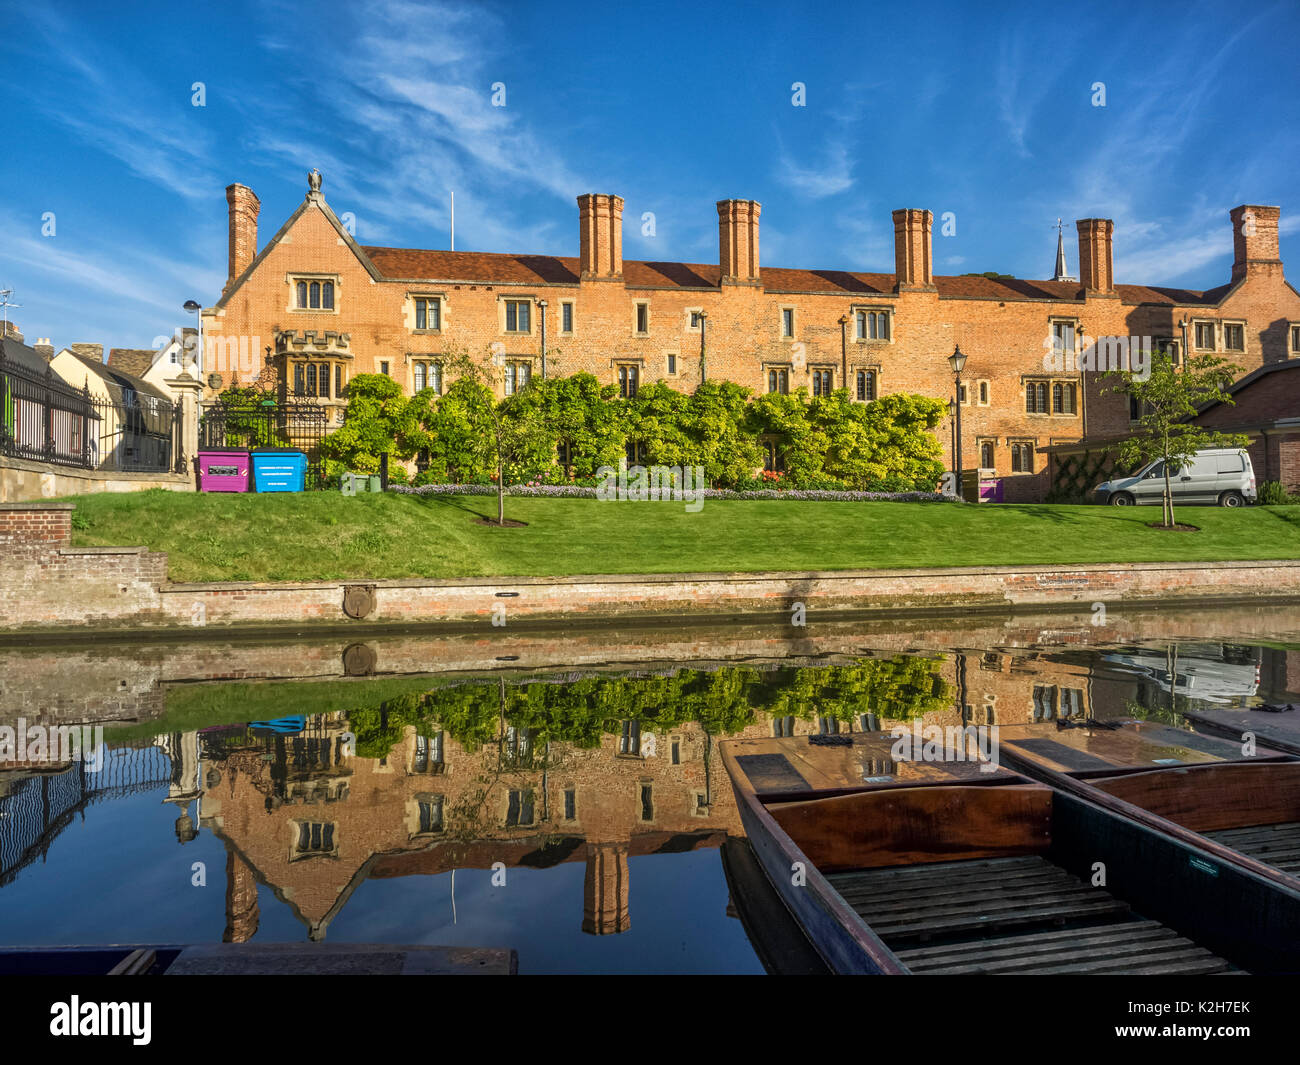 CAMBRIDGE, Royaume-Uni - 11 AOÛT 2017 : bâtiment et résection du Magdalene College vus de l'autre côté de la rivière Cam Banque D'Images